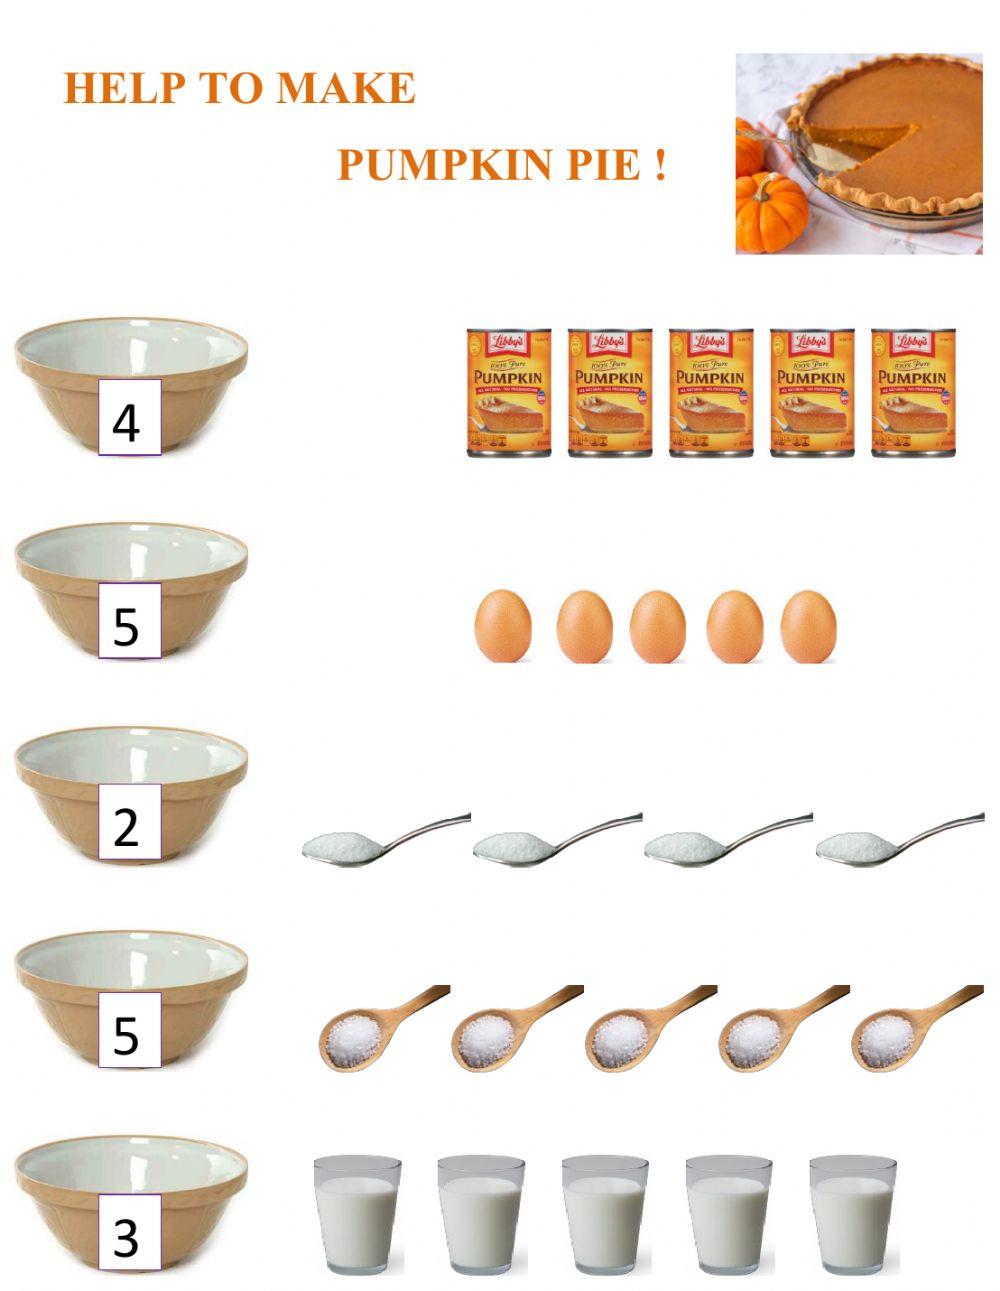 Help to make pumpkin pie